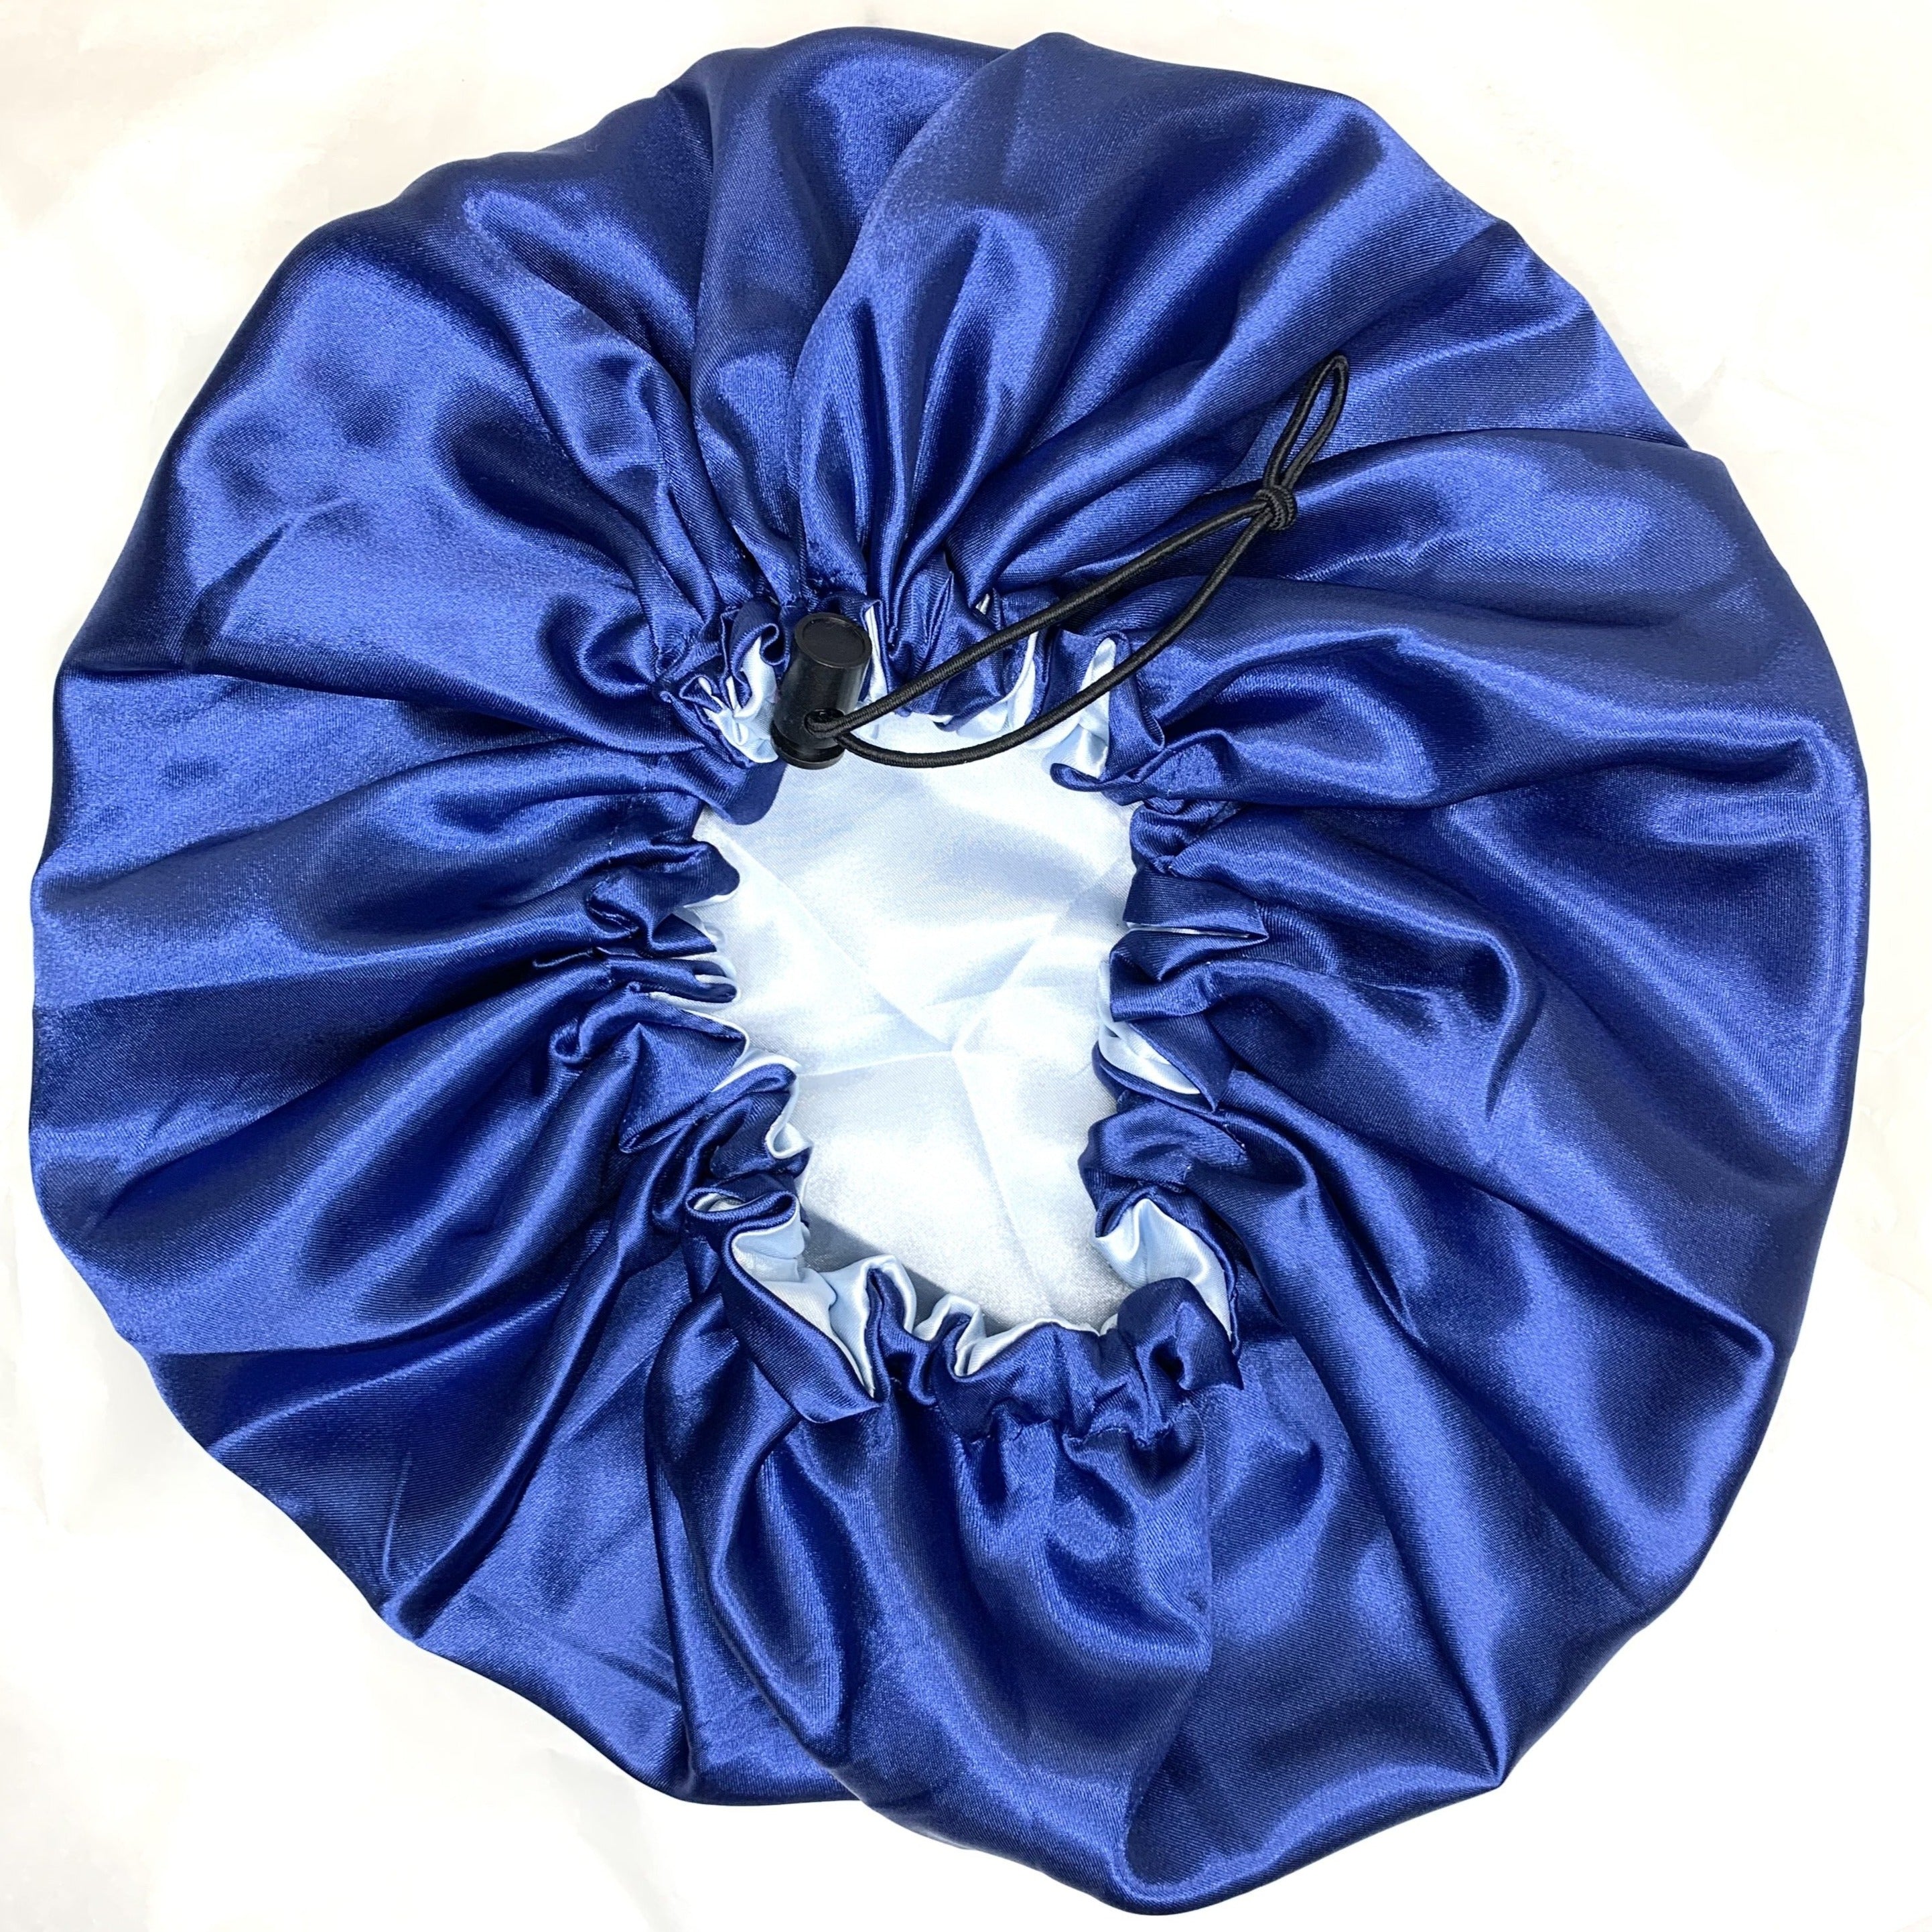 Bonnet en satin réversible et ajustable - Bleu royal et bleu poudre